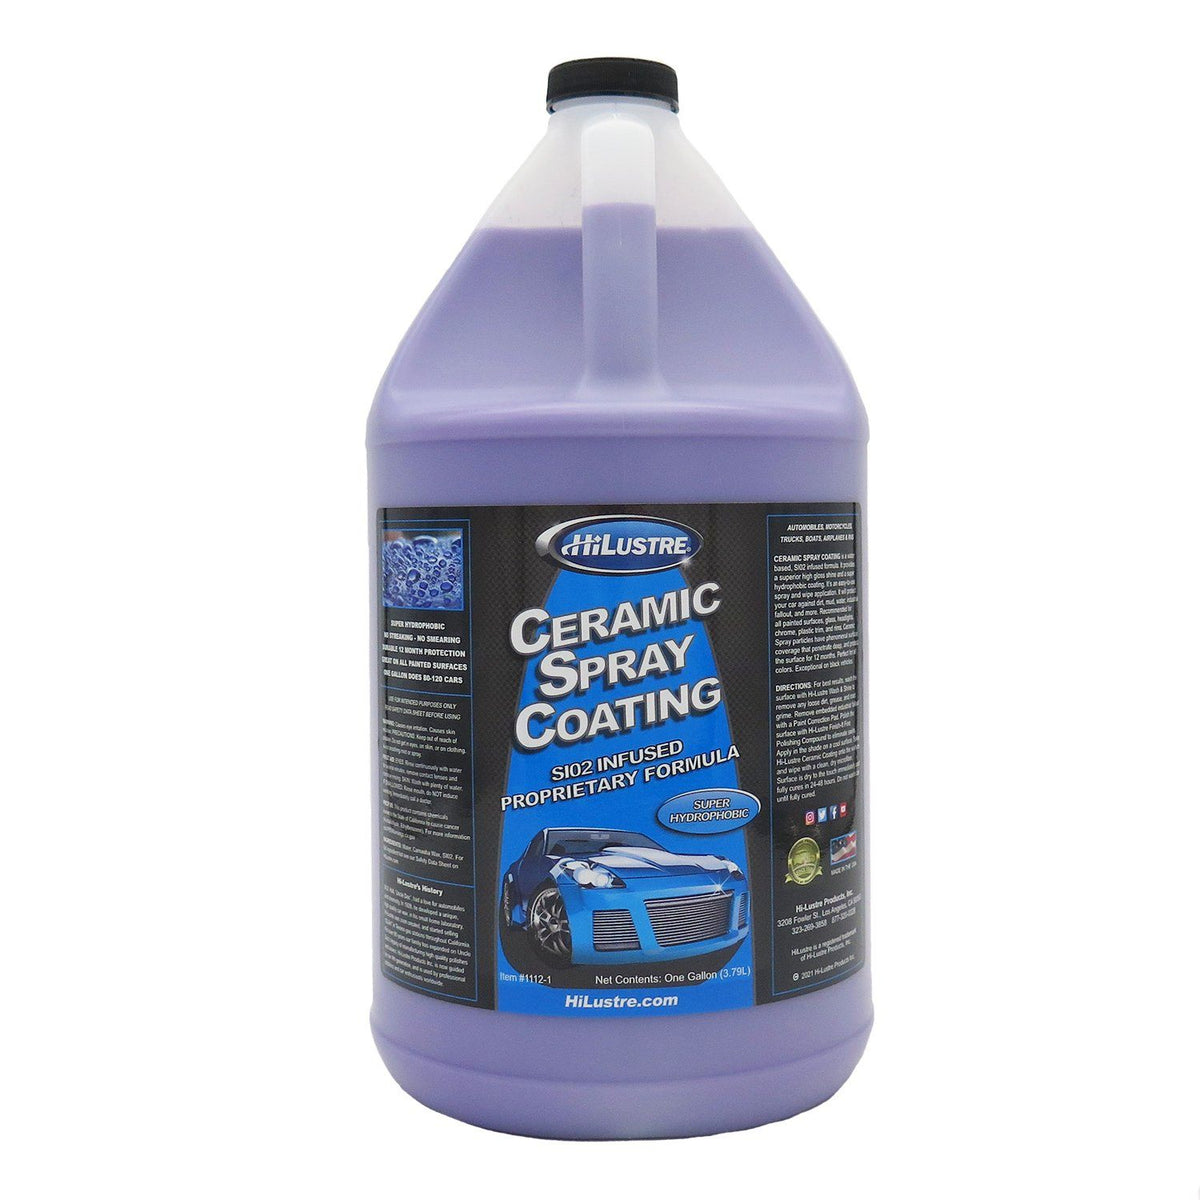 Ceramic Spray Coating - TOP 10